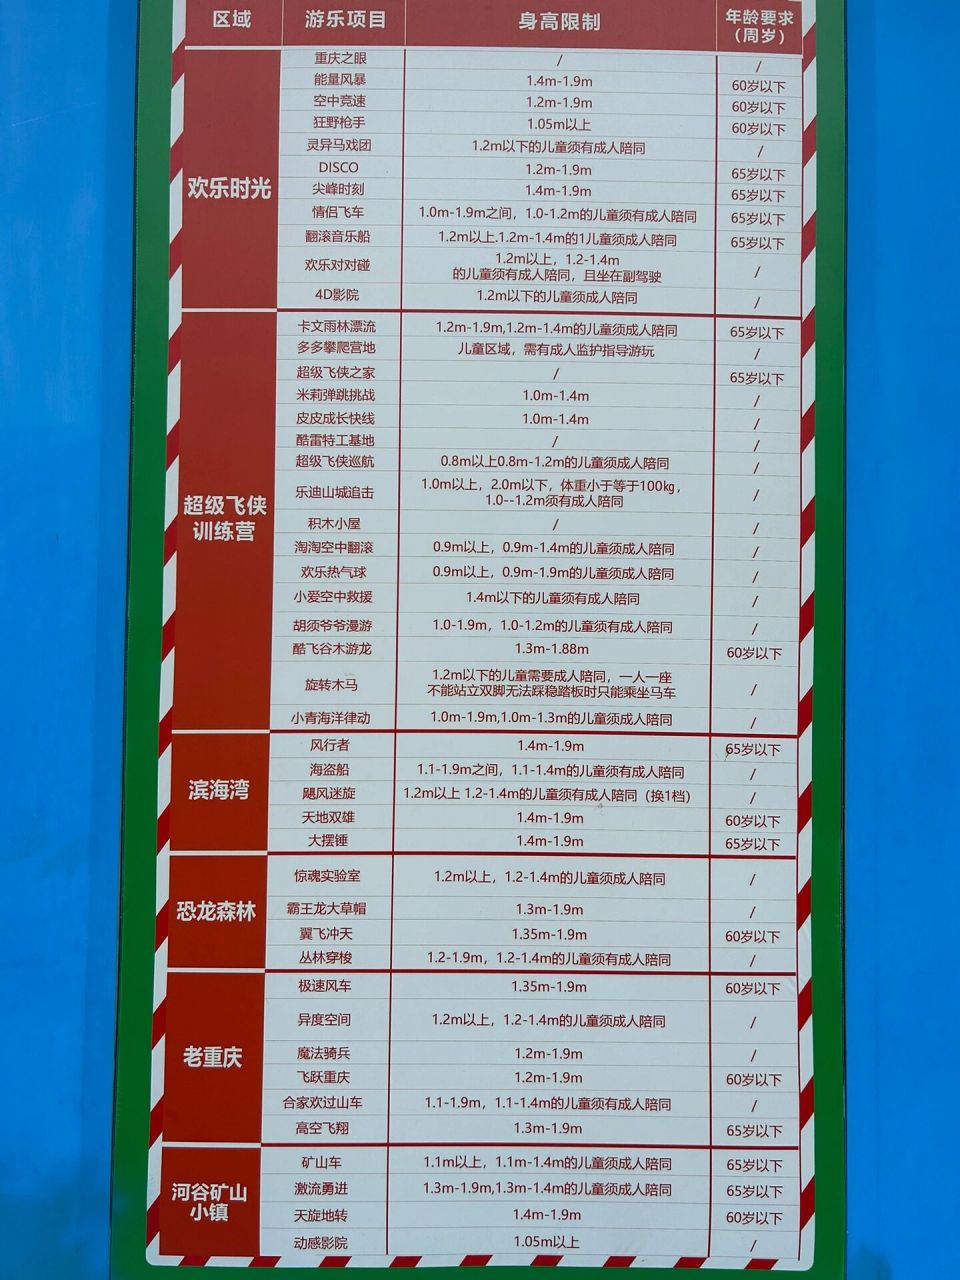 重庆欢乐谷项目游玩须知 超级飞侠训练营里面的,大部分项目小朋友都